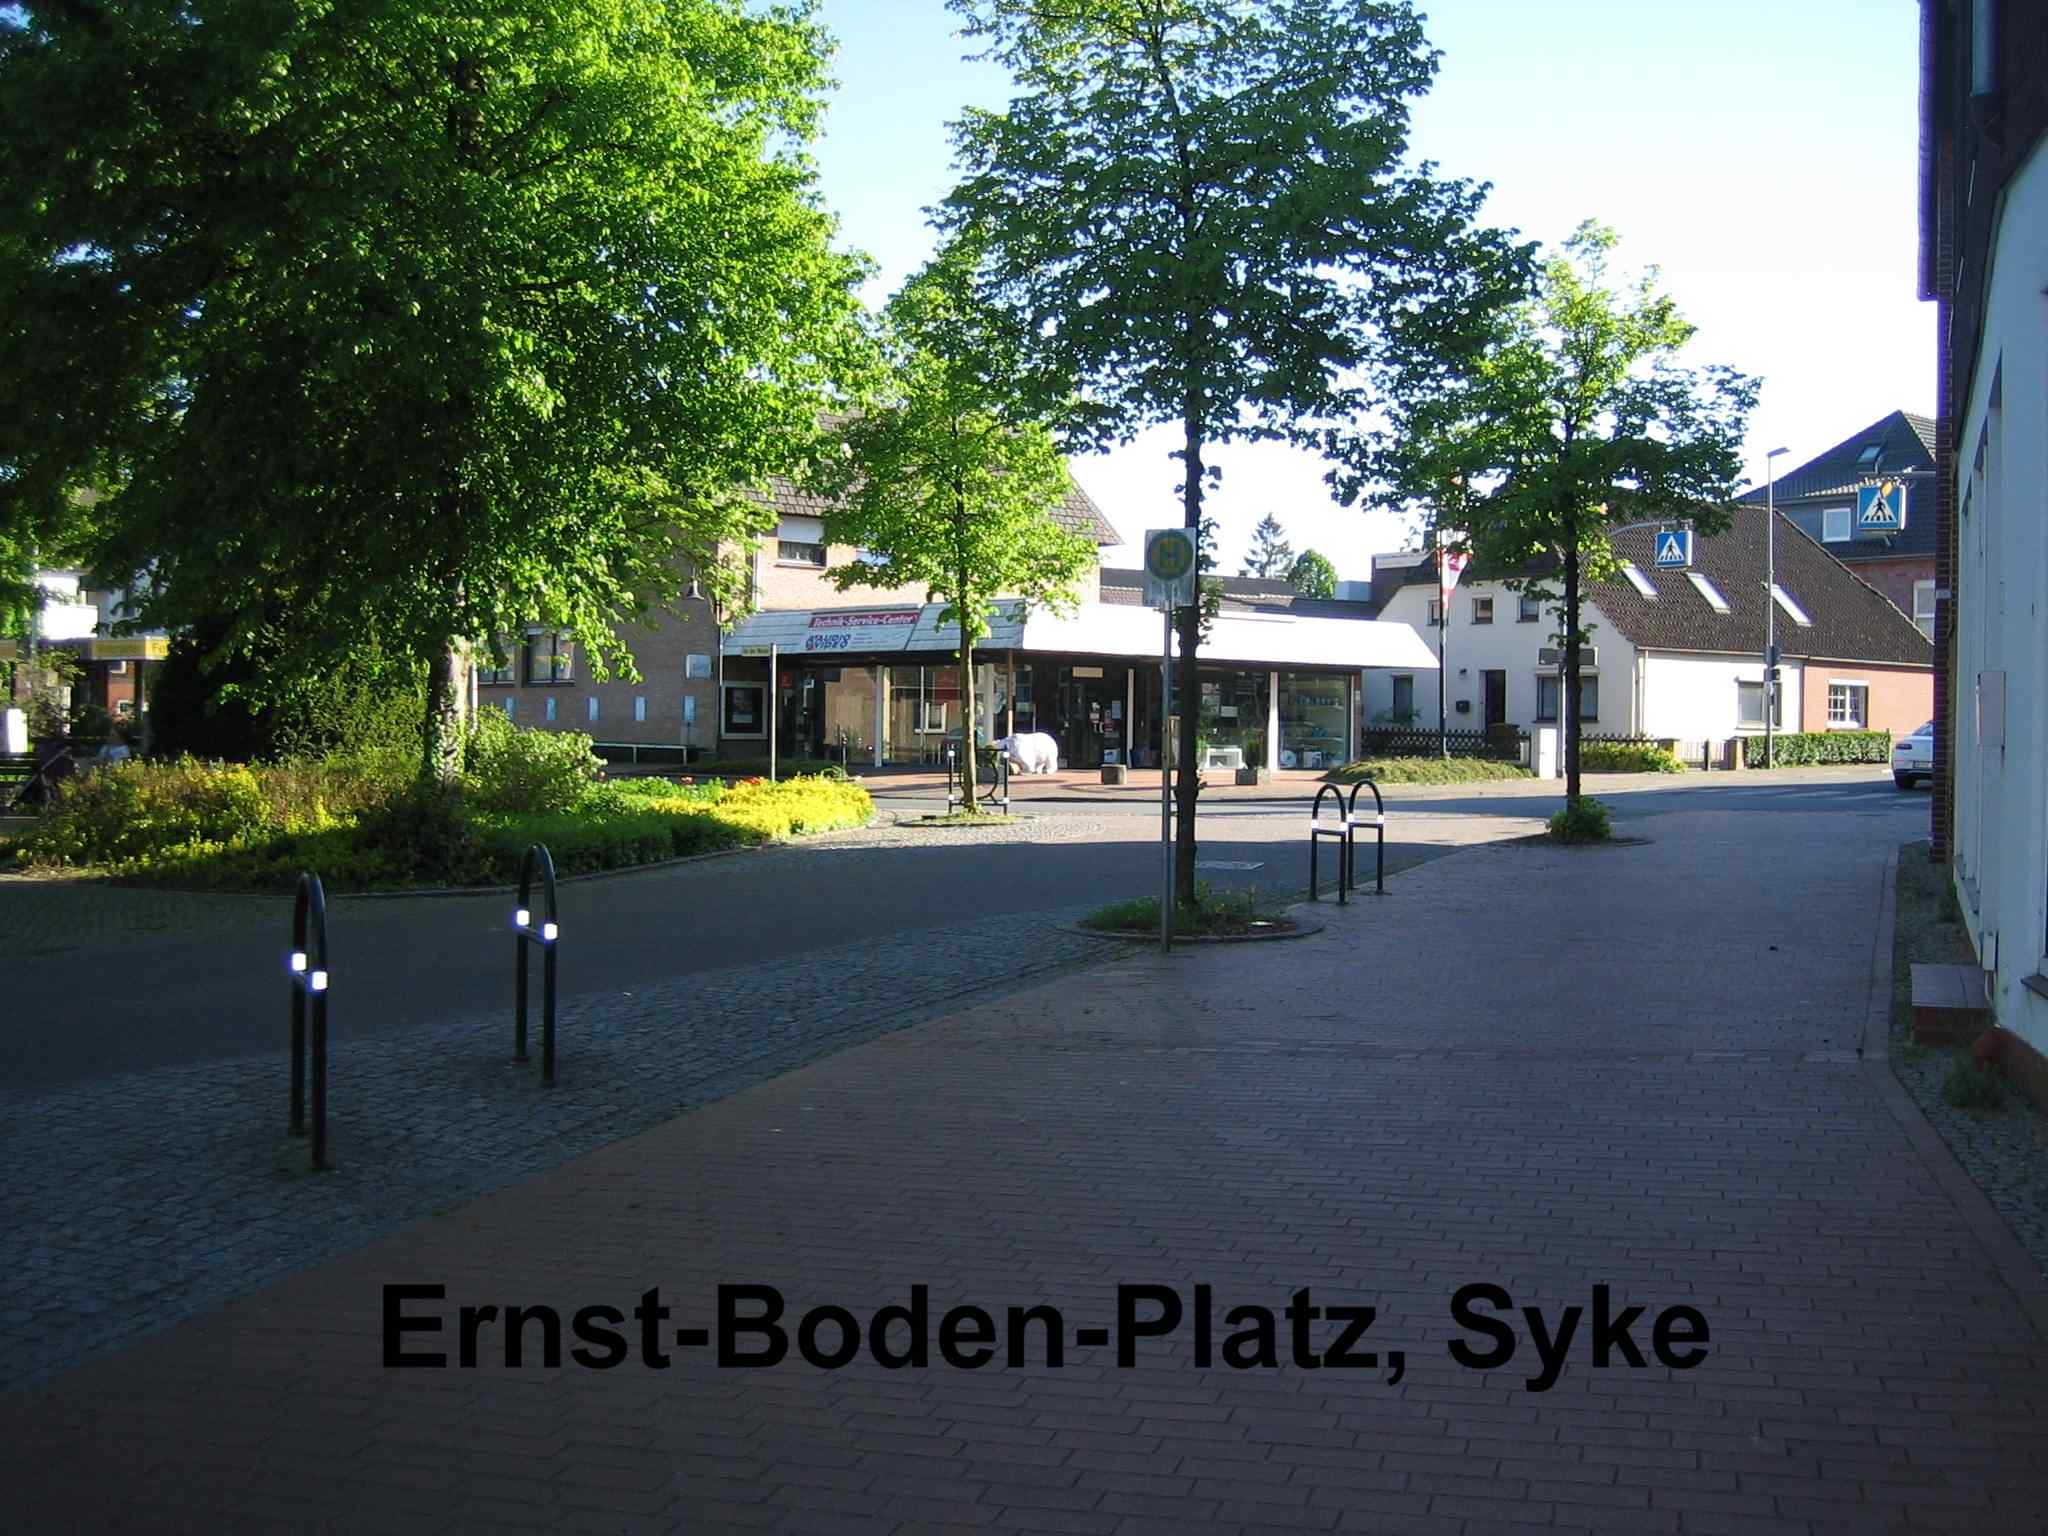 185-02_Ernst-Boden-Platz_1.jpg